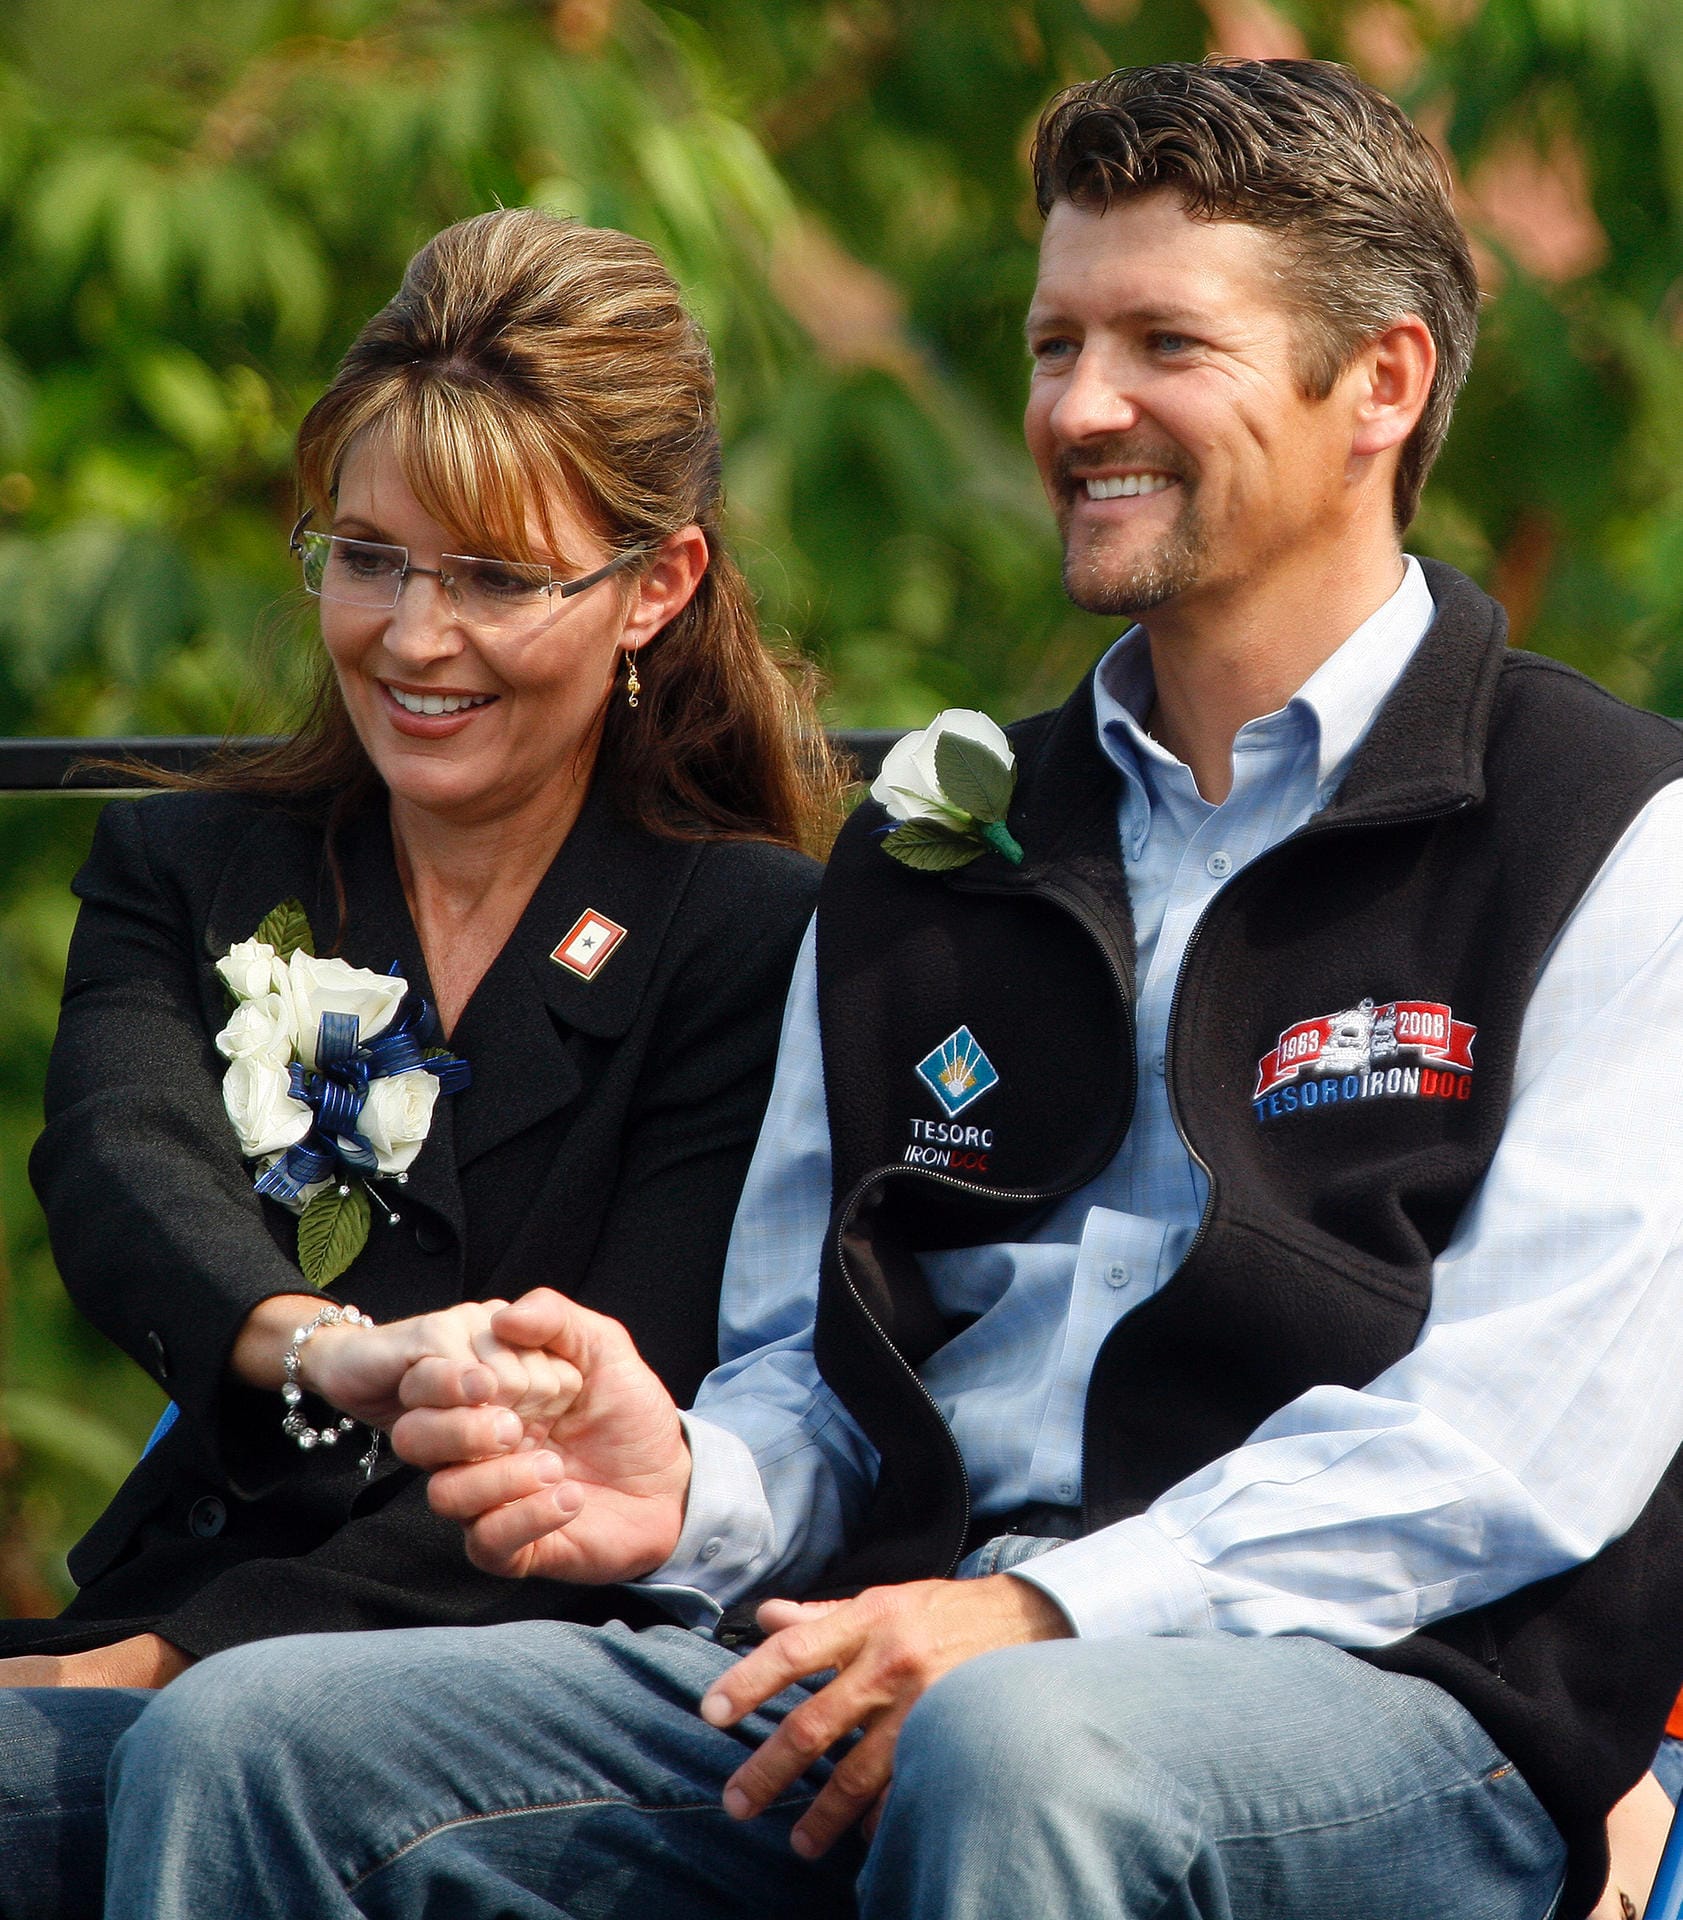 Ehepaar Palin im Juli 2009: Das war ihr letztes Jahr als Gouverneurin im US-Bundesstaat Alaska.